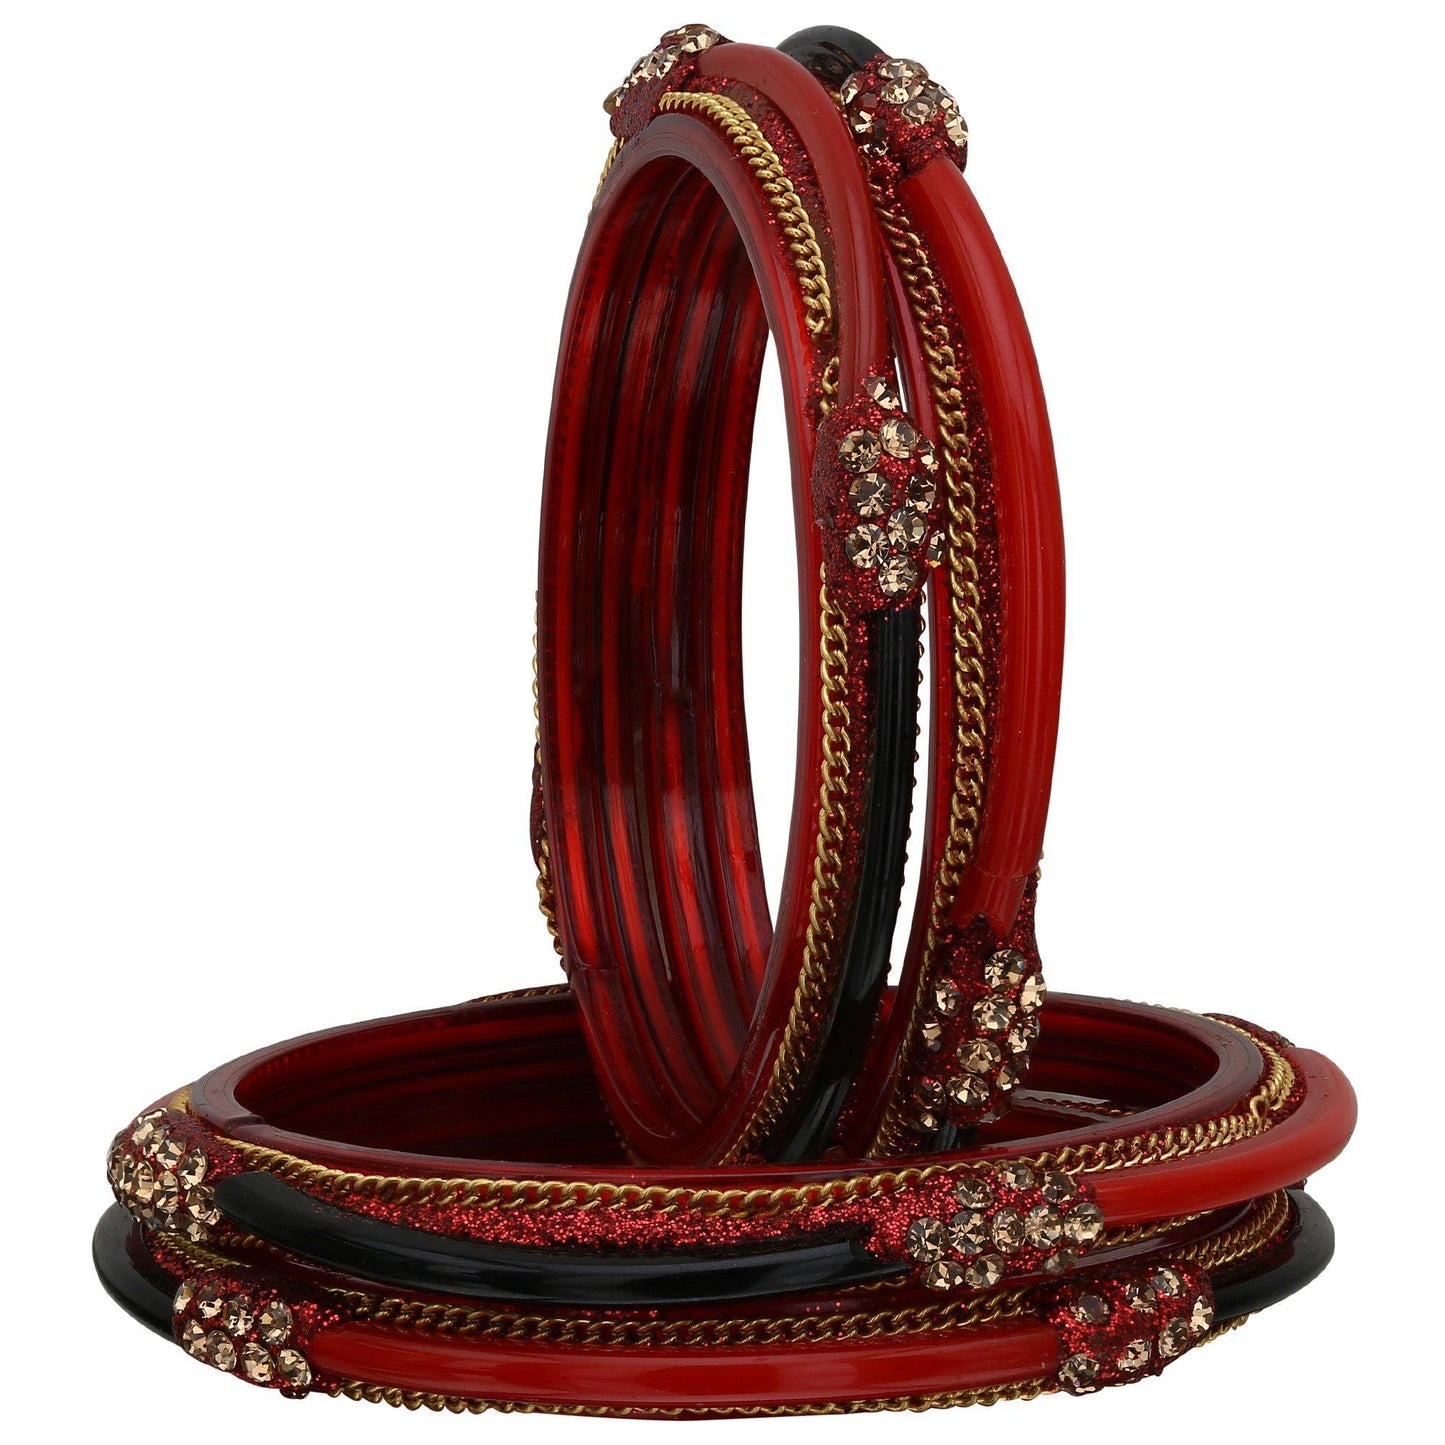 sukriti designer handmade glossy glass bangles for women – set of 4